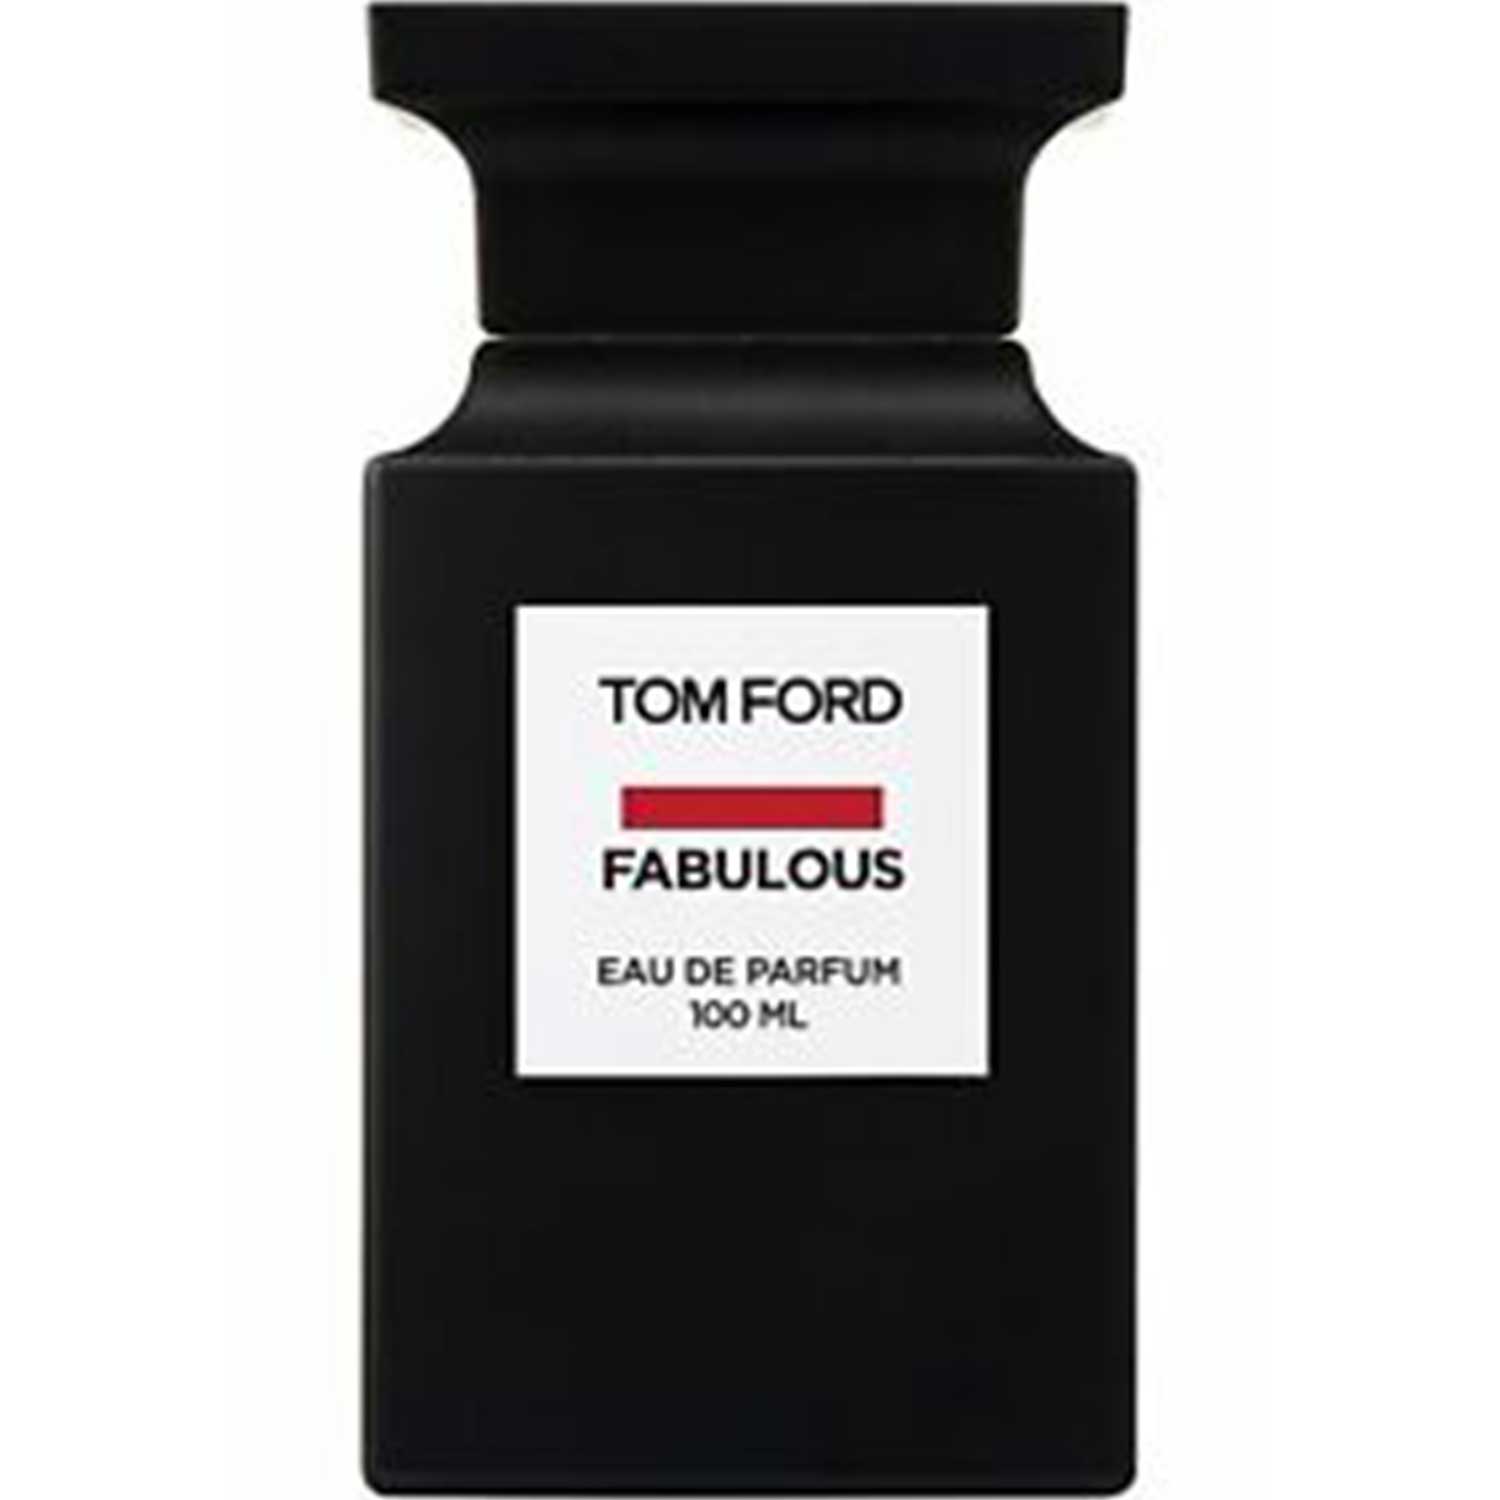 Tom Ford Fabulous EDP Unisex (Men Or Women) Decant | Perfume ...